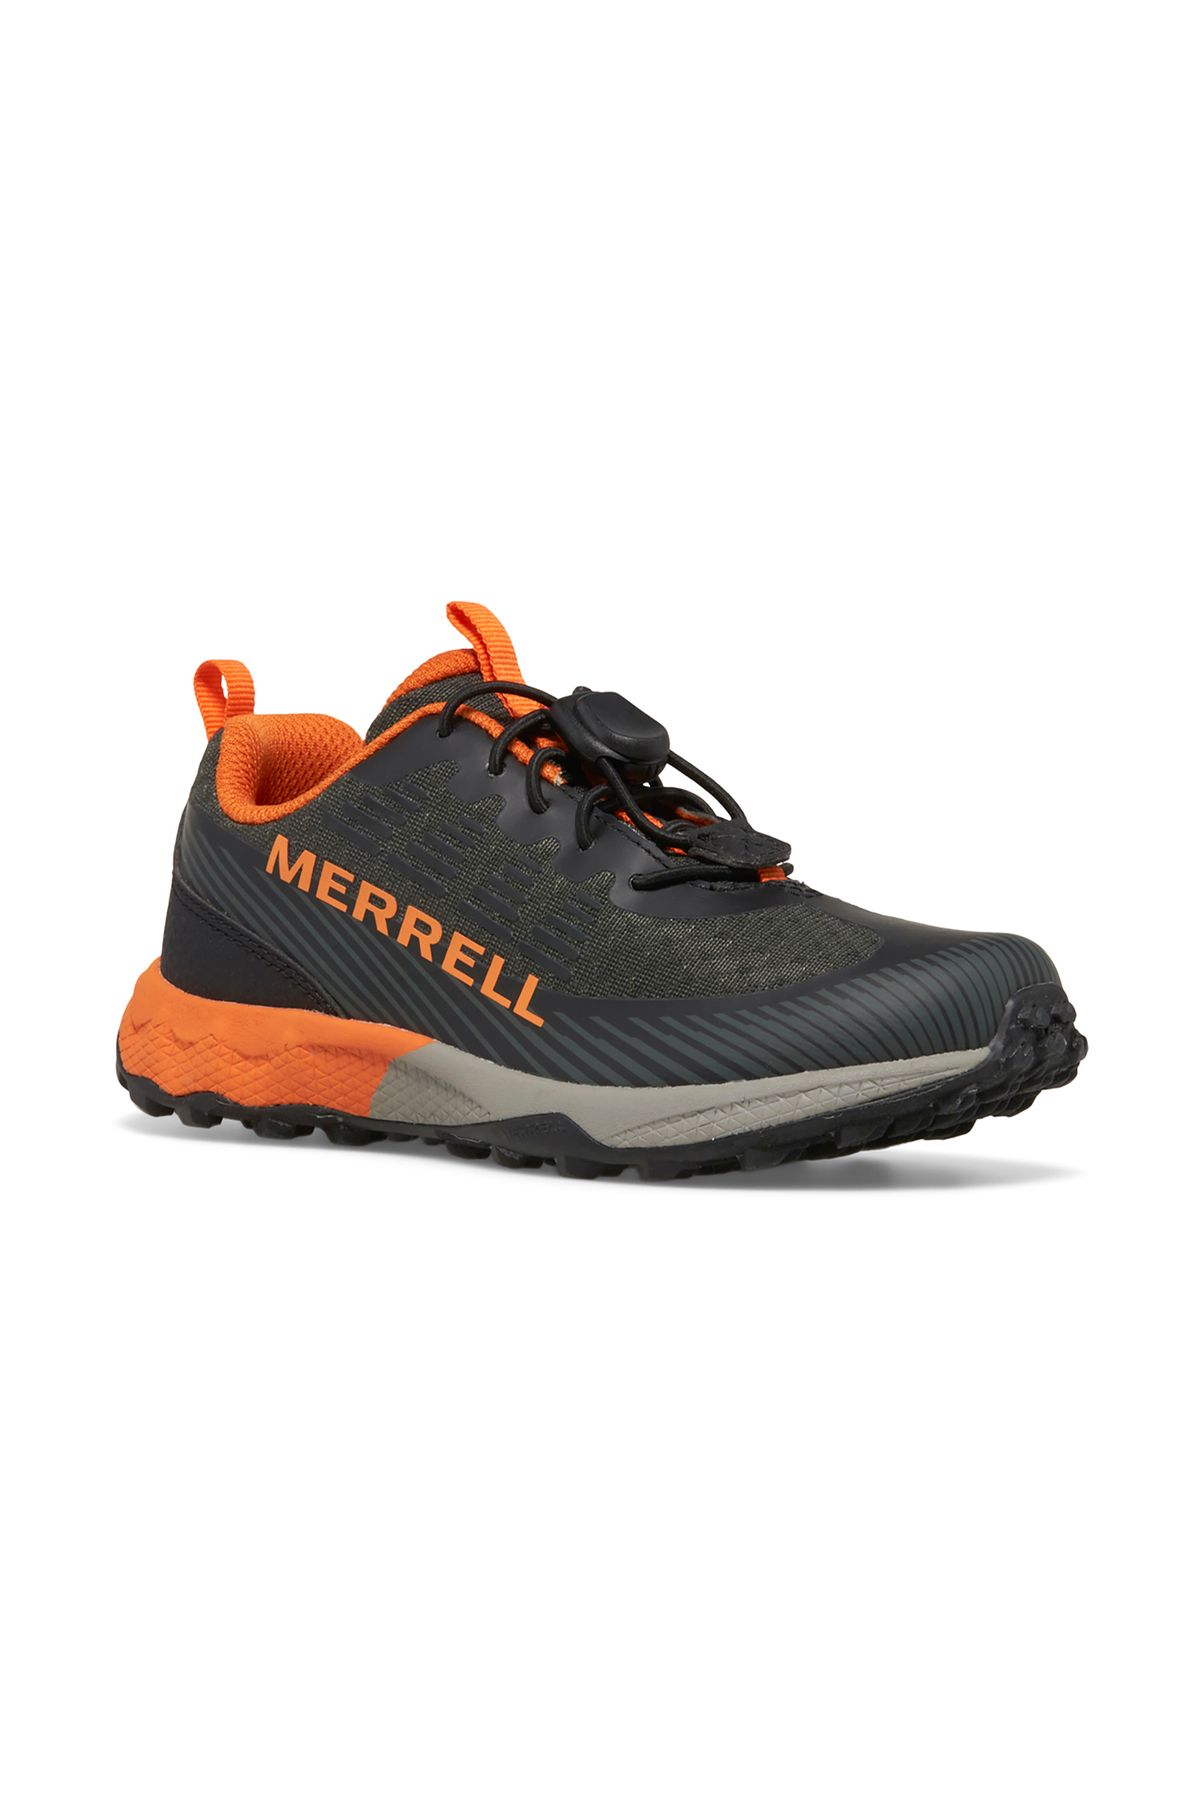 Merrell Agility Peak Çocuk Outdoor Ayakkabısı